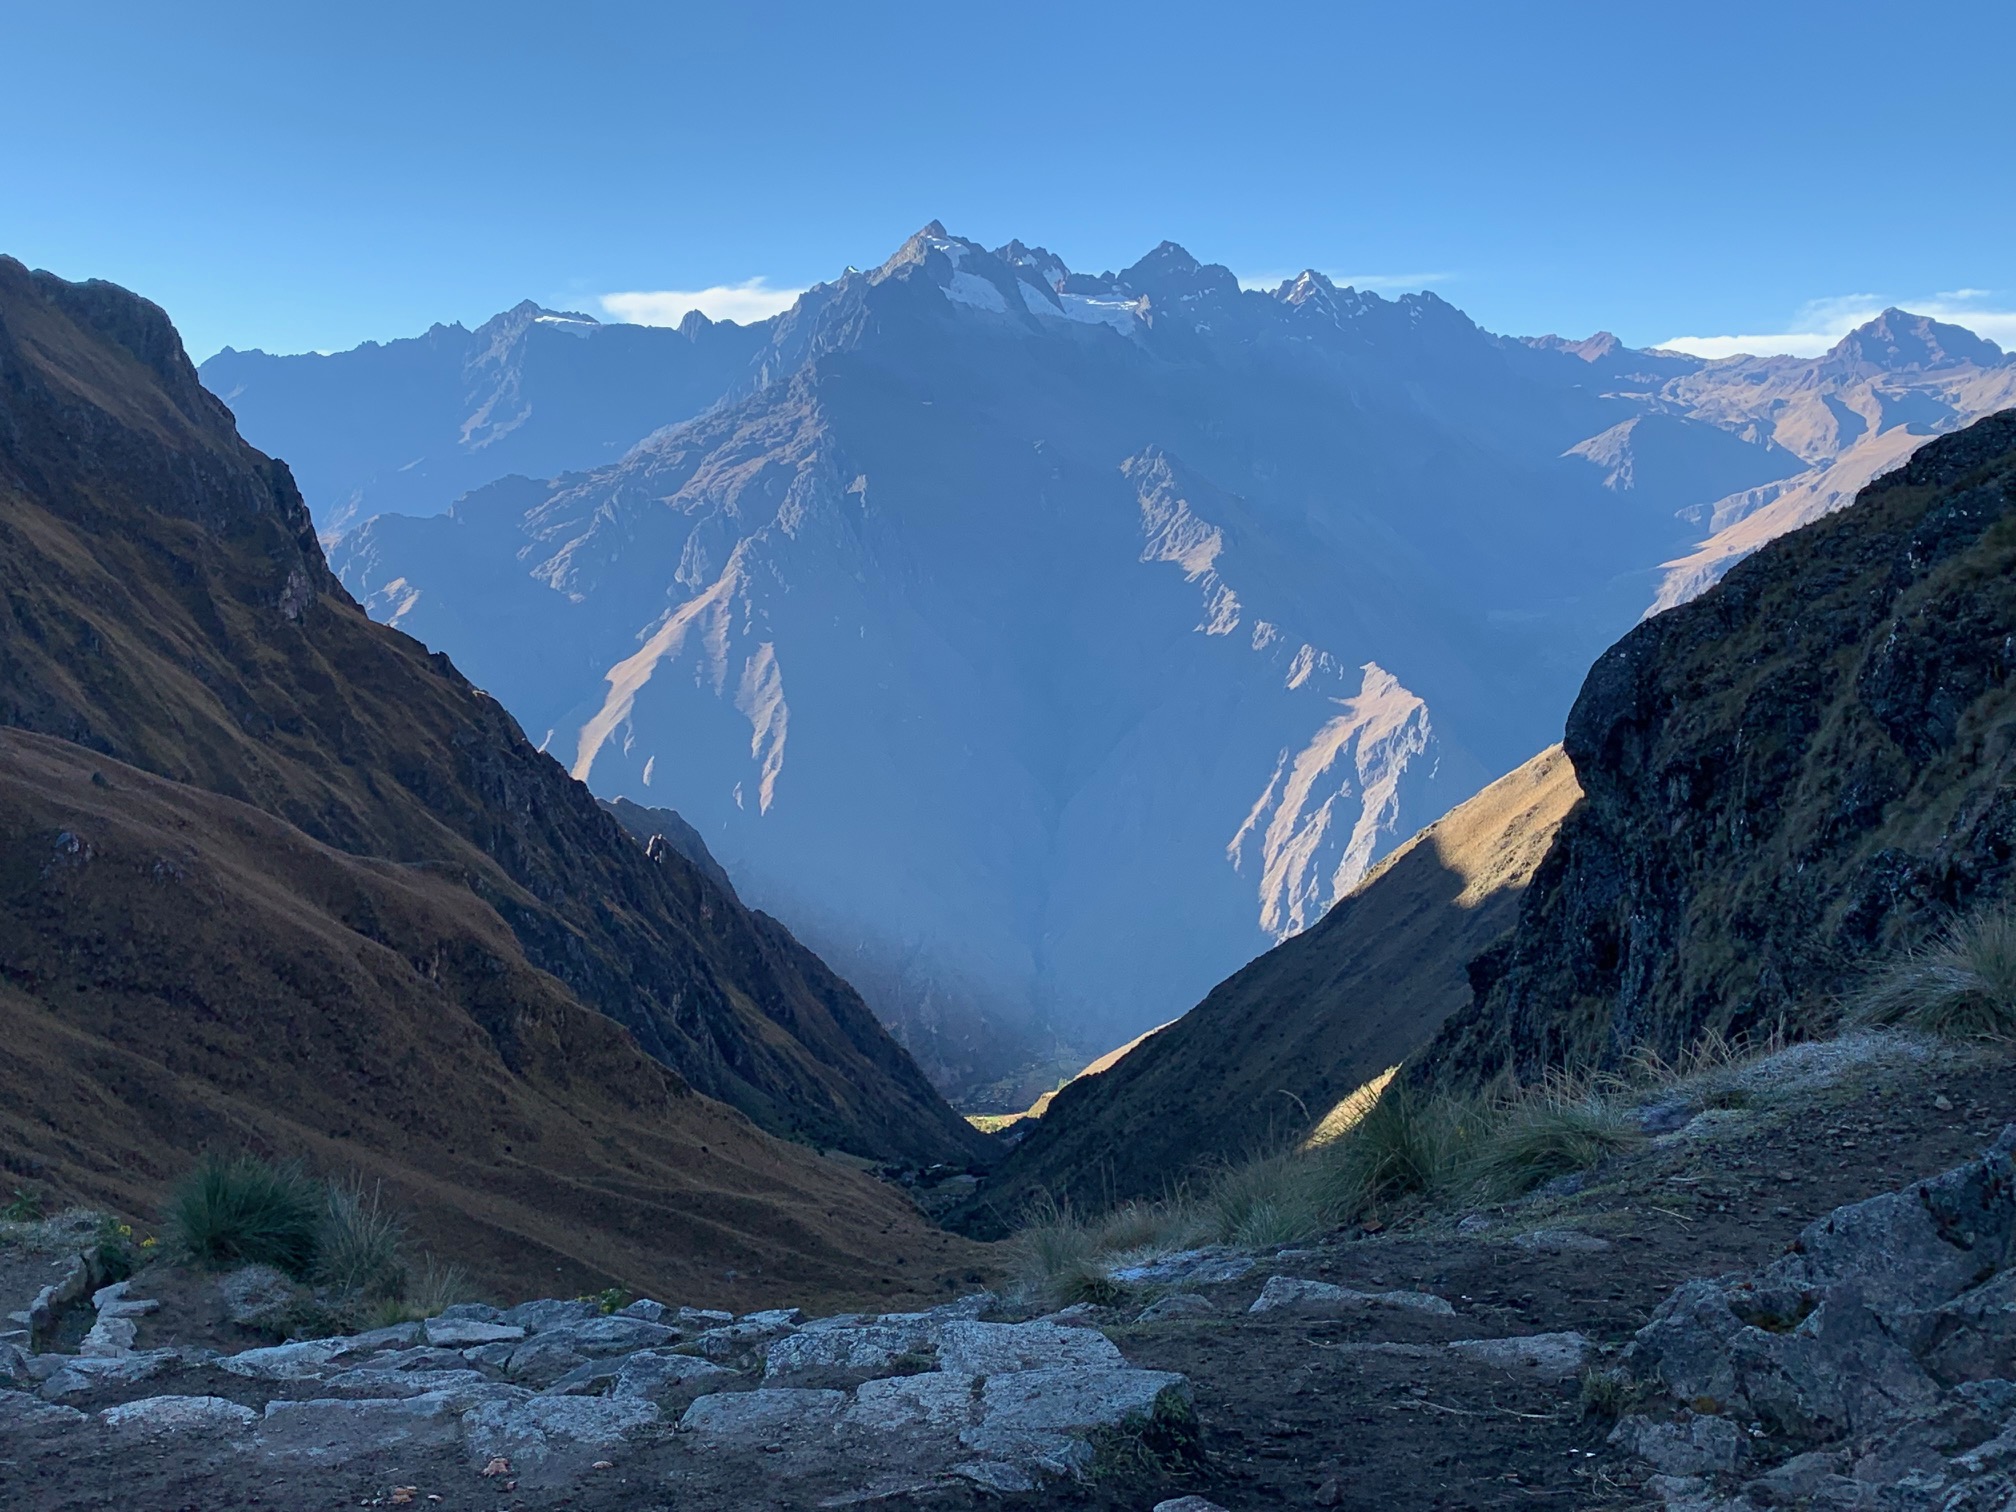 The Inca Trail to Machu Picchu